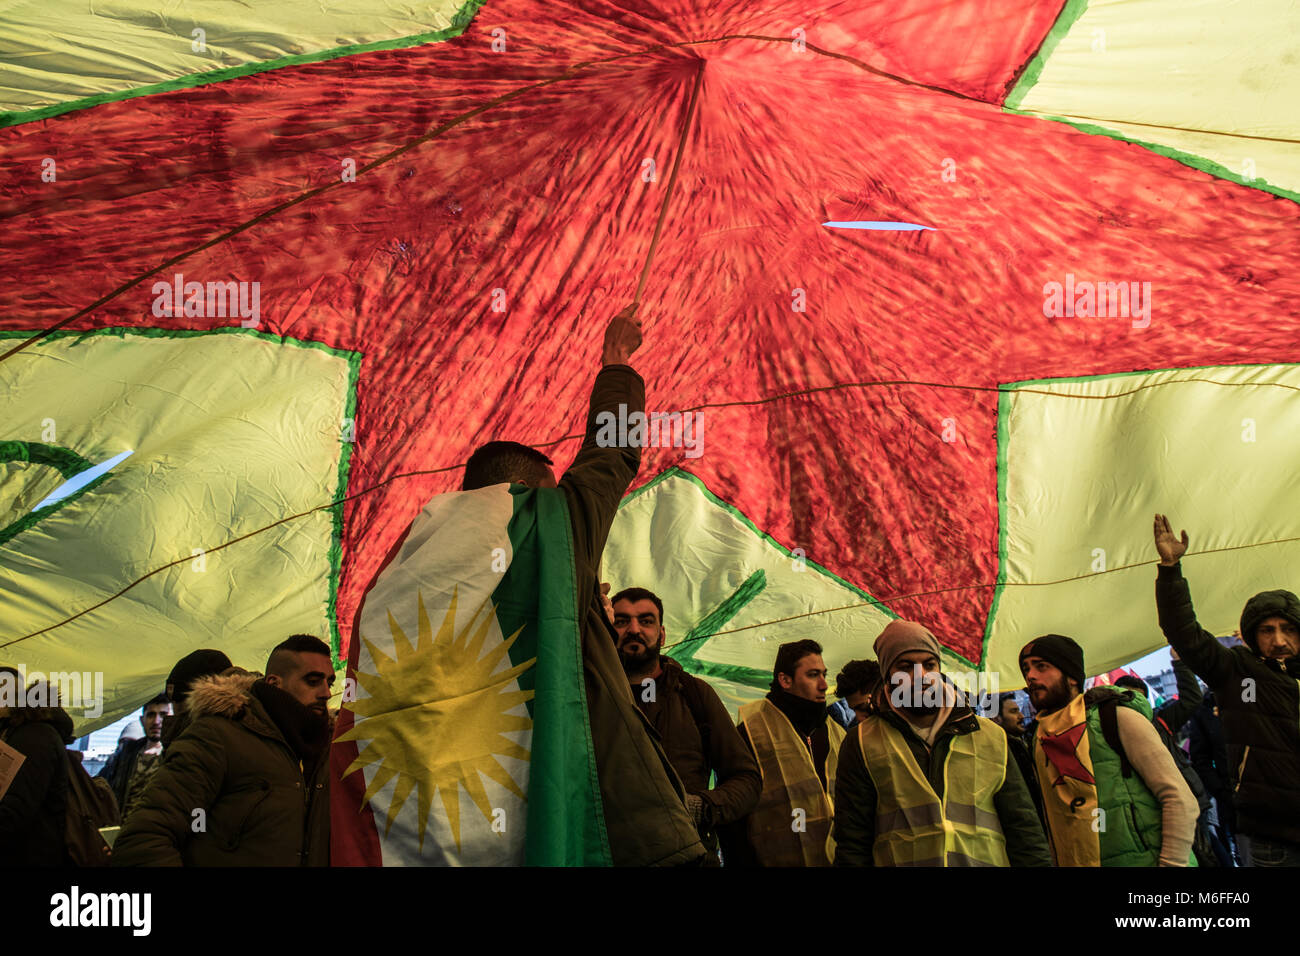 03 de marzo de 2018, Alemania, Berlín: pueblo kurdo hasta banderas y carteles de protesta en una protesta provocada por las agresiones turcas en la provincia de Siria de Afrin, donde la mayoría de la población es curda. Foto: Paul Zinken/dpa Foto de stock